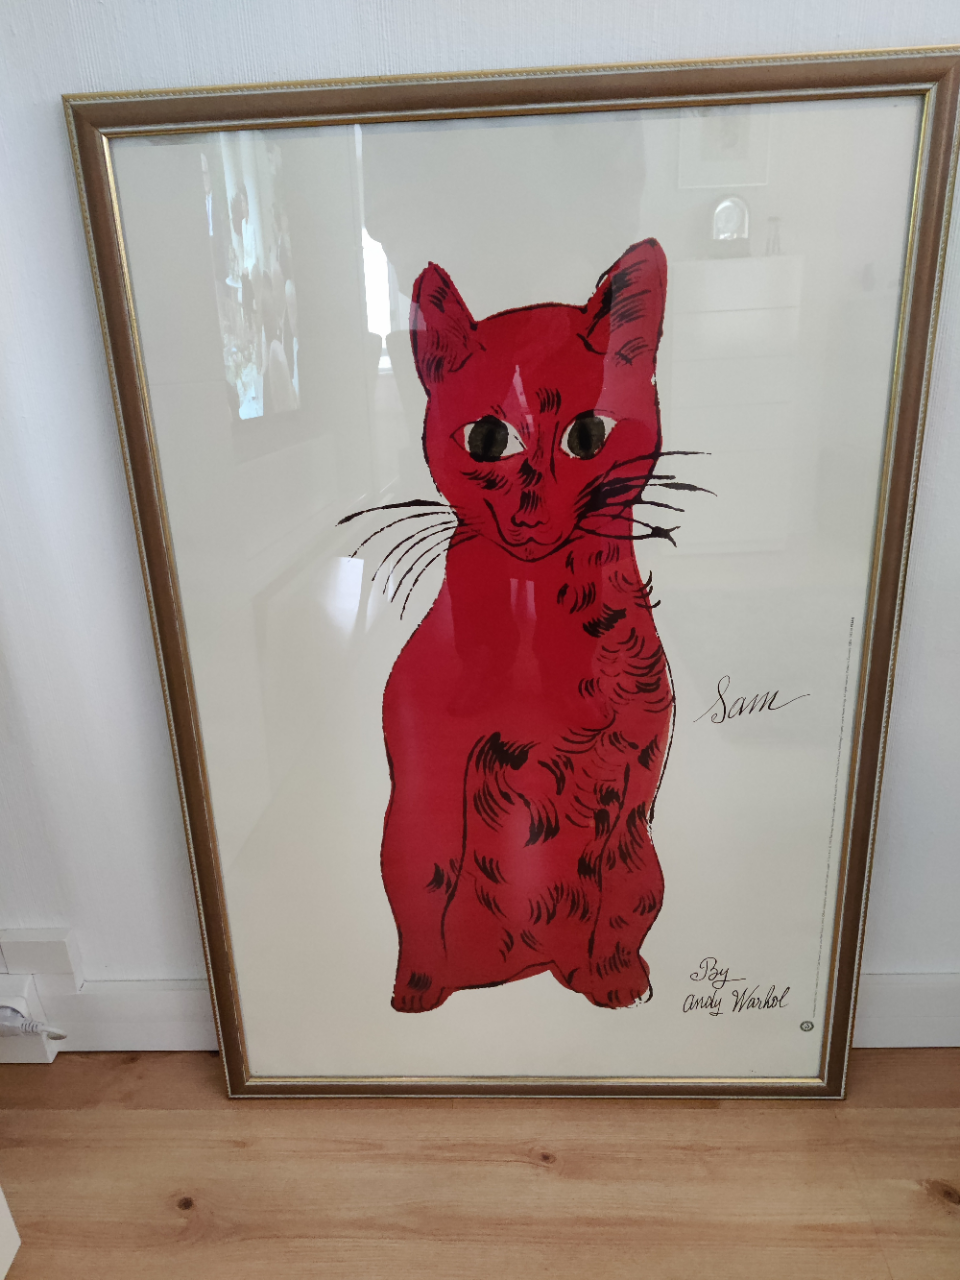 Andy Warholin "Sam kissa" taulusta tehty juliste Finnmirror kehyksissä.